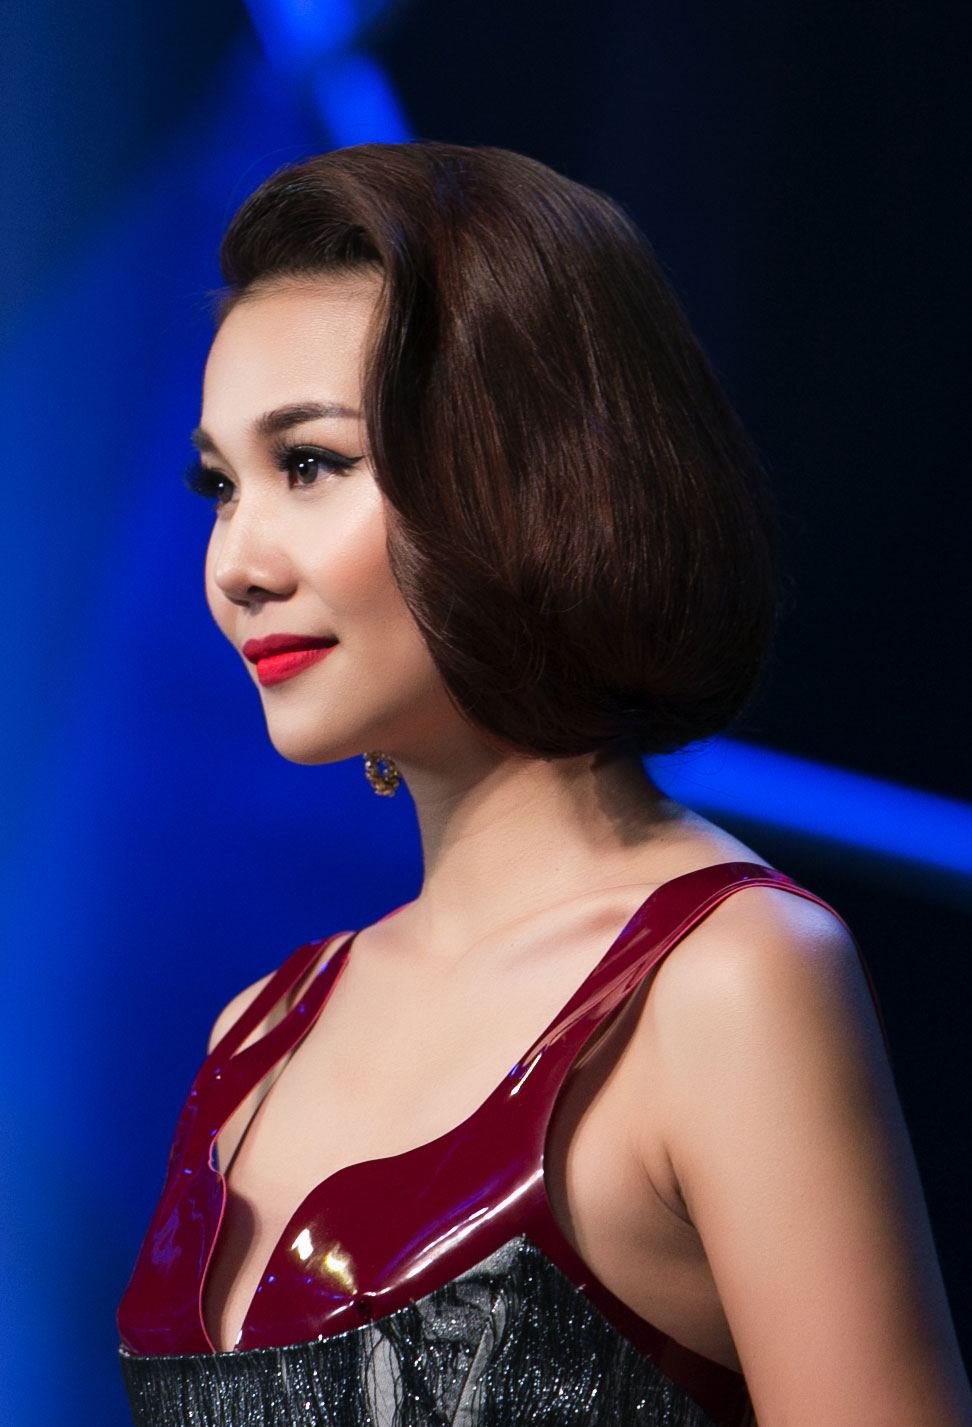 Đến với cuộc thi Hoa hậu Hoàn vũ Việt Nam 2019, Thanh Hằng mong muốn được cùng các thành viên ban giám khảo góp phần tìm ra người kế nhiệm Hoa hậu Hoàn vũ Việt Nam 2017 - Top 5 Miss Universe 2018 H'Hen Niê bằng cái nhìn mới mẻ, kinh nghiệm, hiện đại.